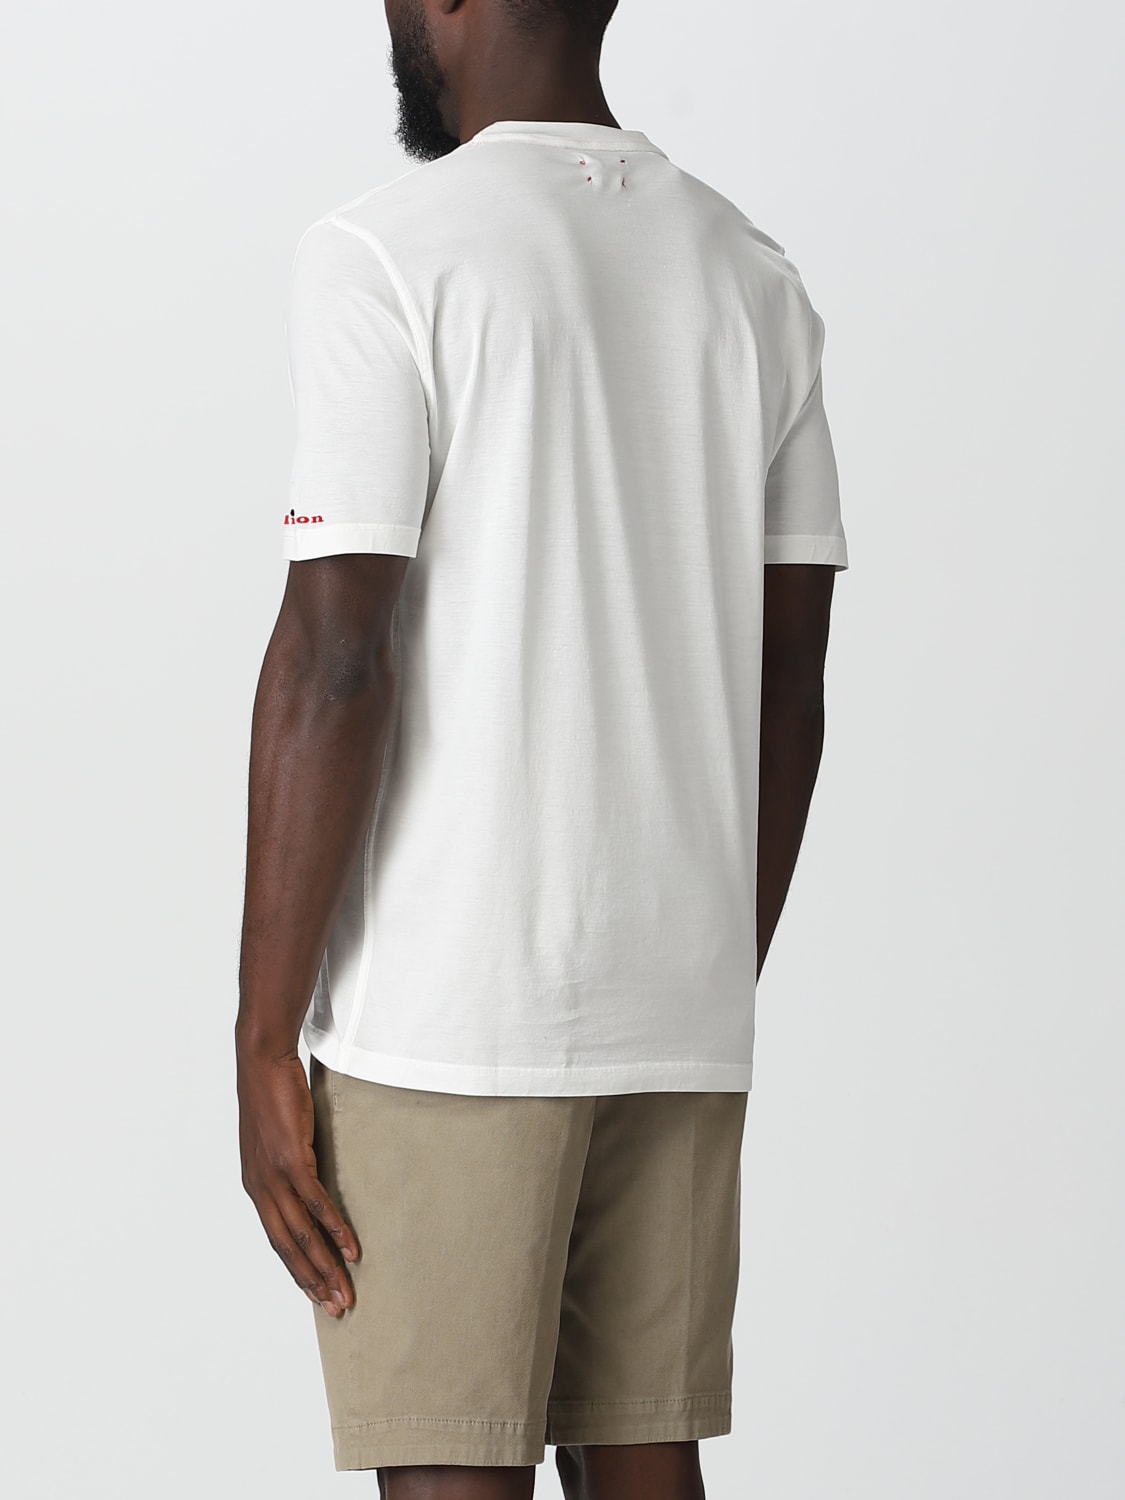 Tシャツ Kiton: Tシャツ Kiton メンズ ホワイト 2